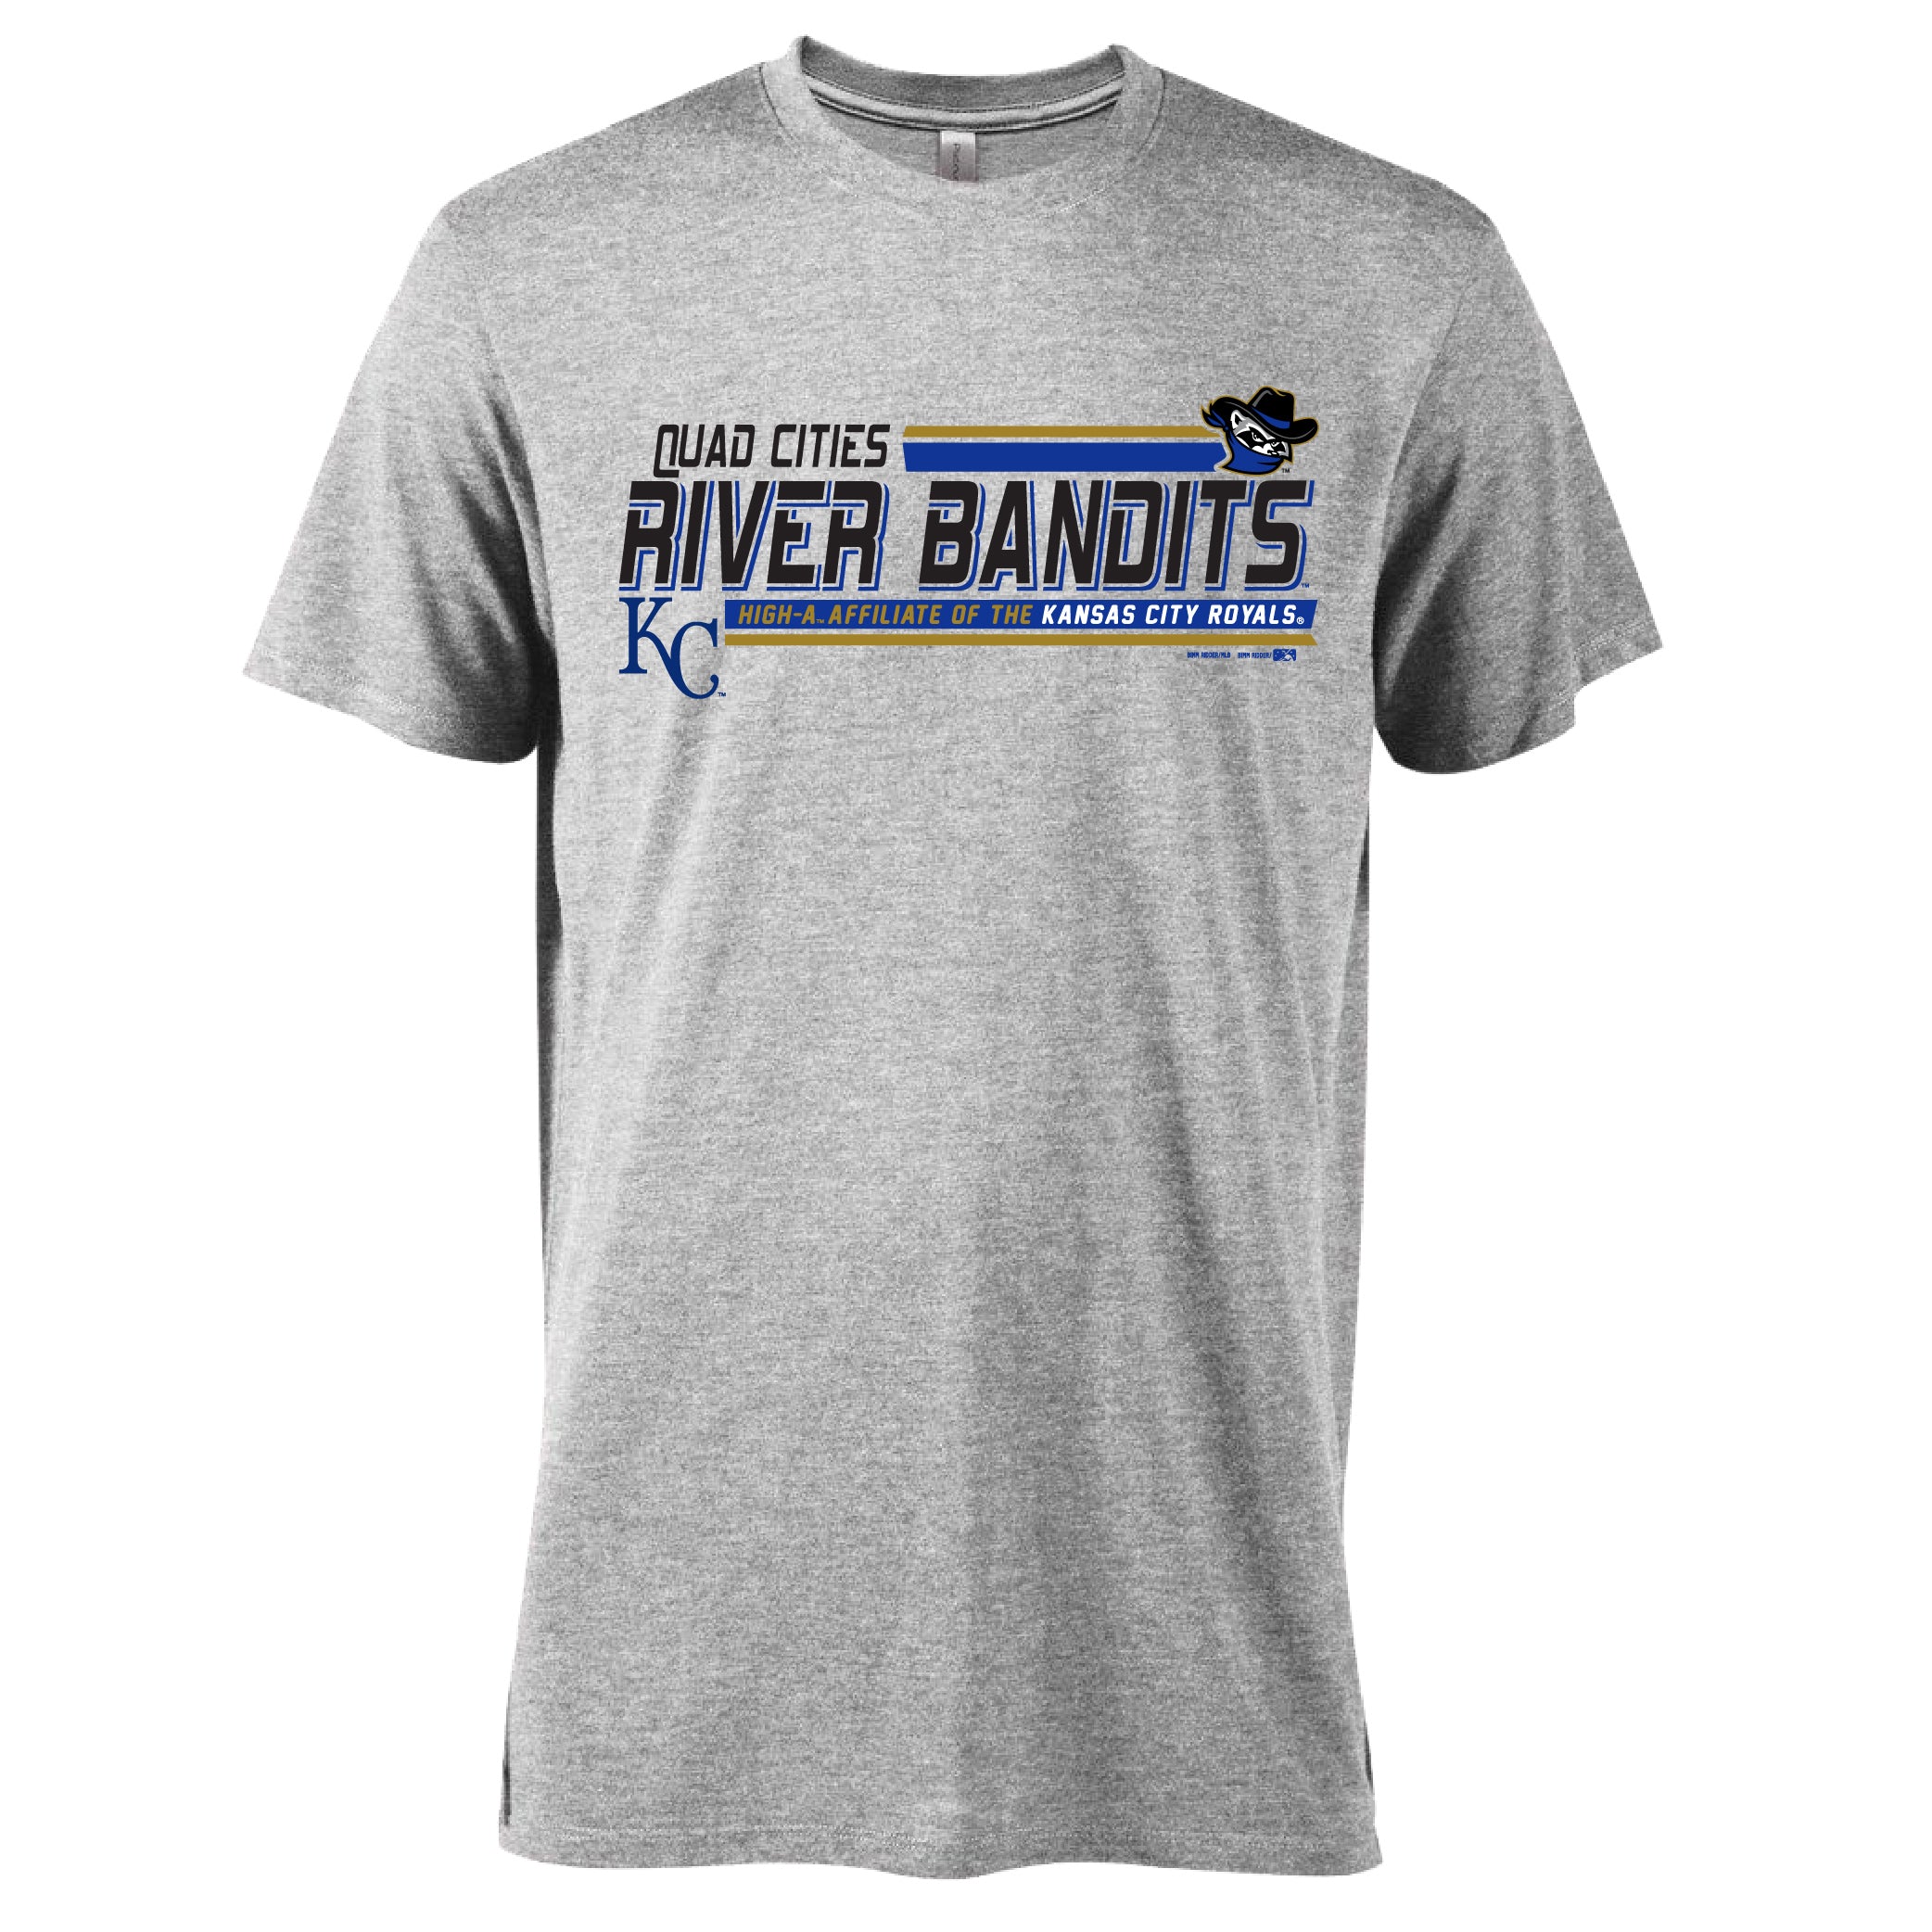 quad city river bandits jersey